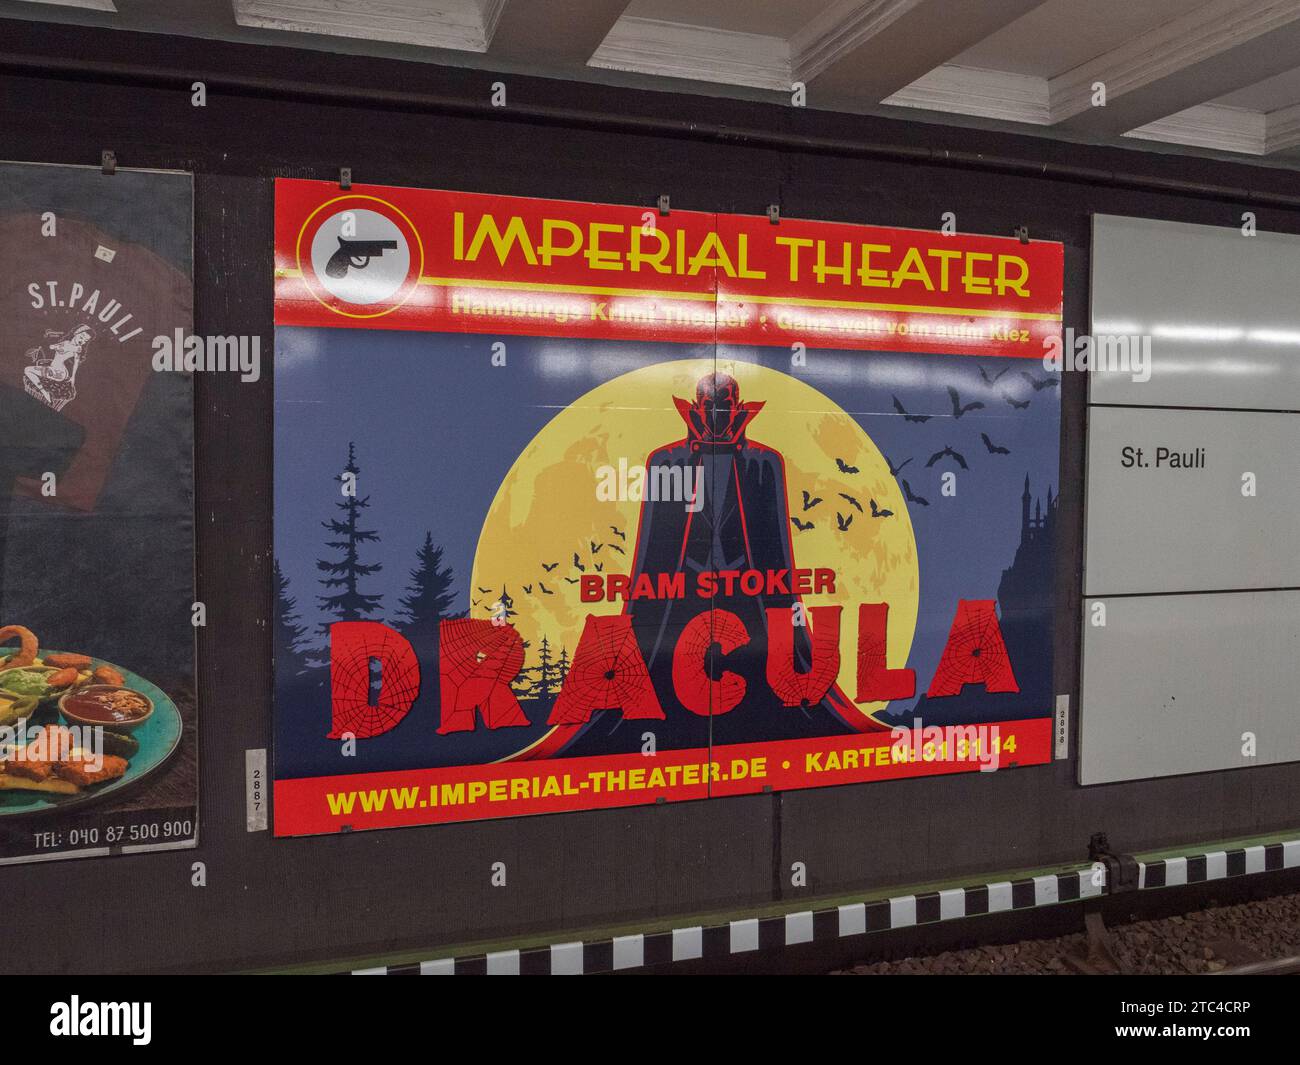 Pubblicità metropolitana di Amburgo per Bram Stoker Dracula al Teatro Imperiale di Amburgo, Germania. Foto Stock